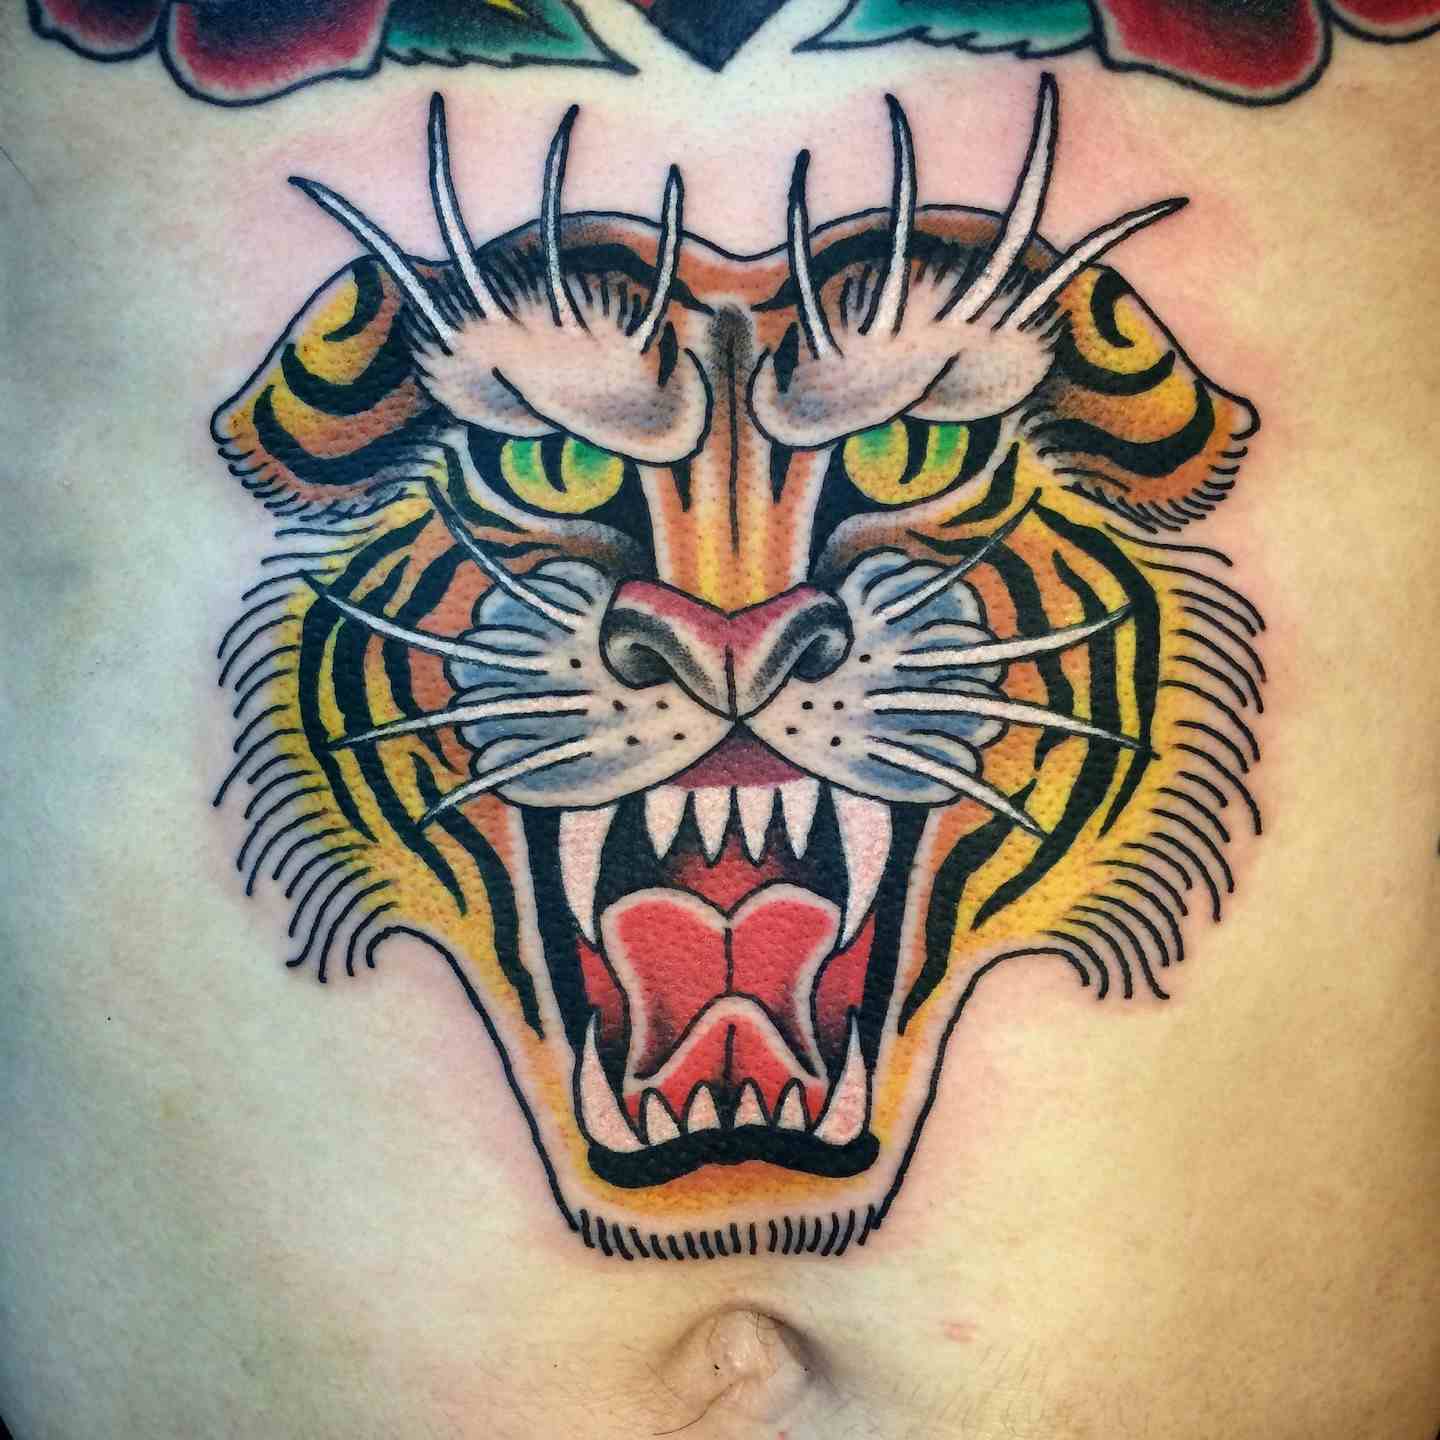 Tiger stomach tattoo